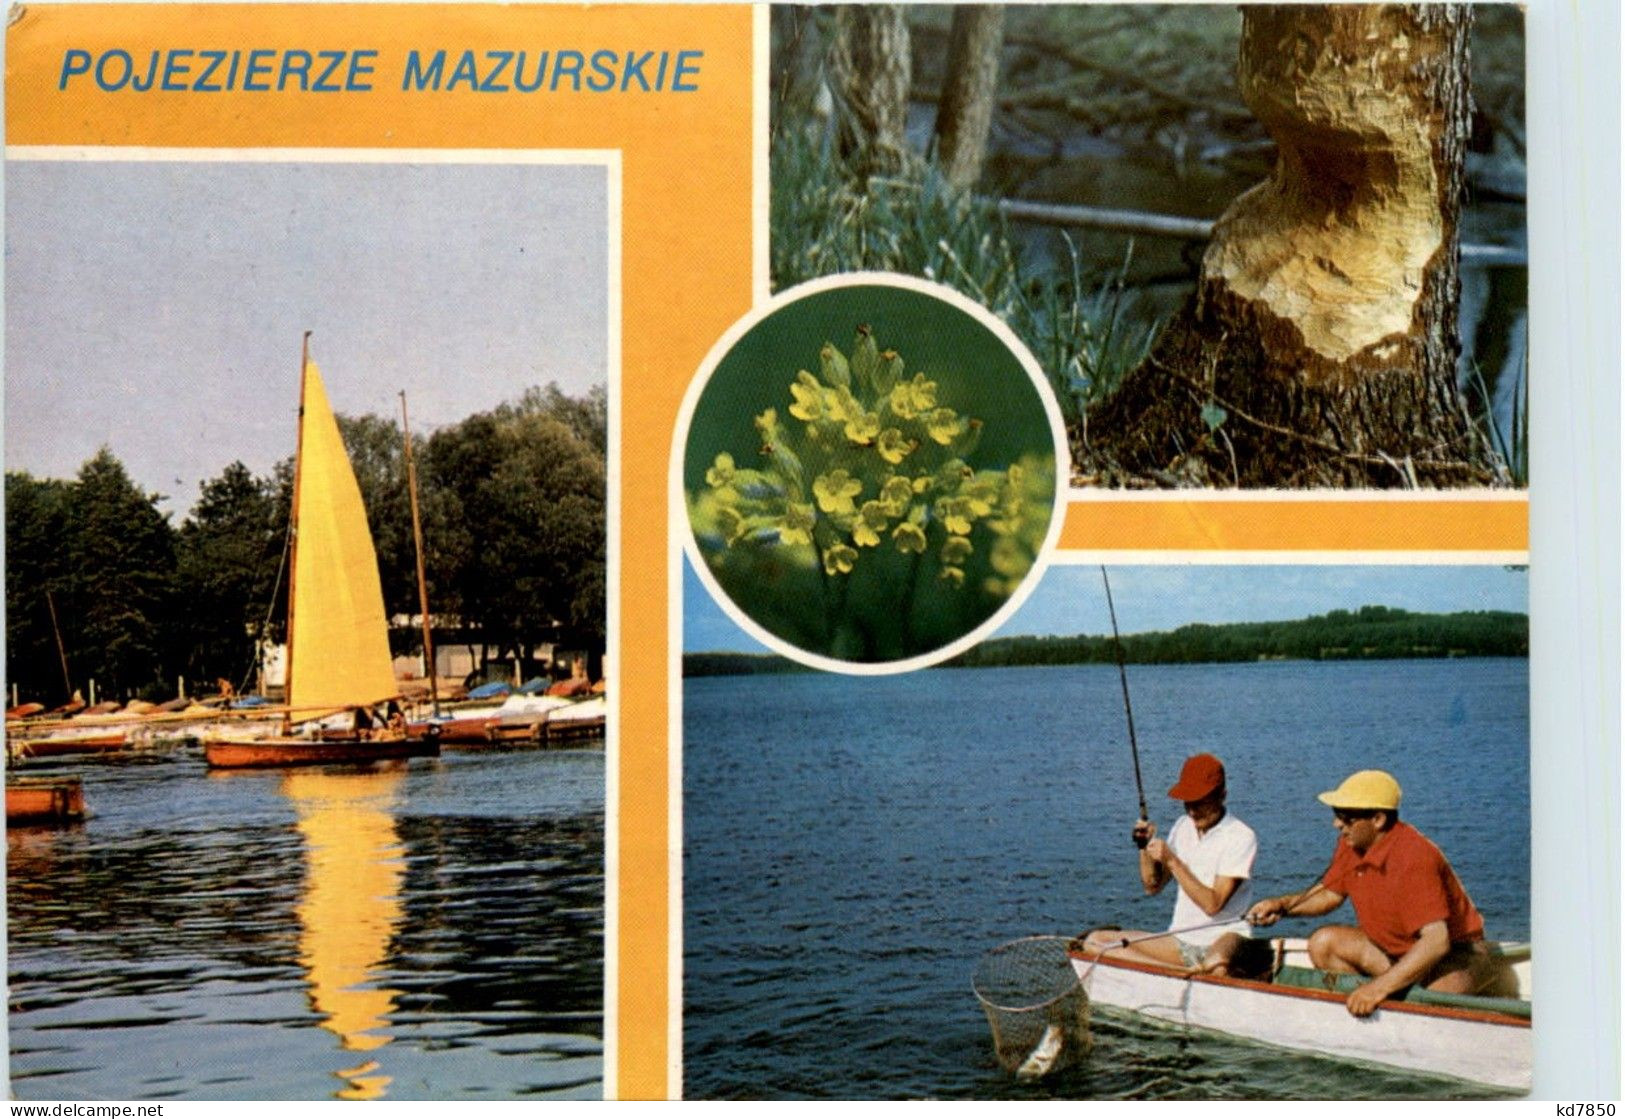 Pojezierze Mazurskie - Fishing - Polen